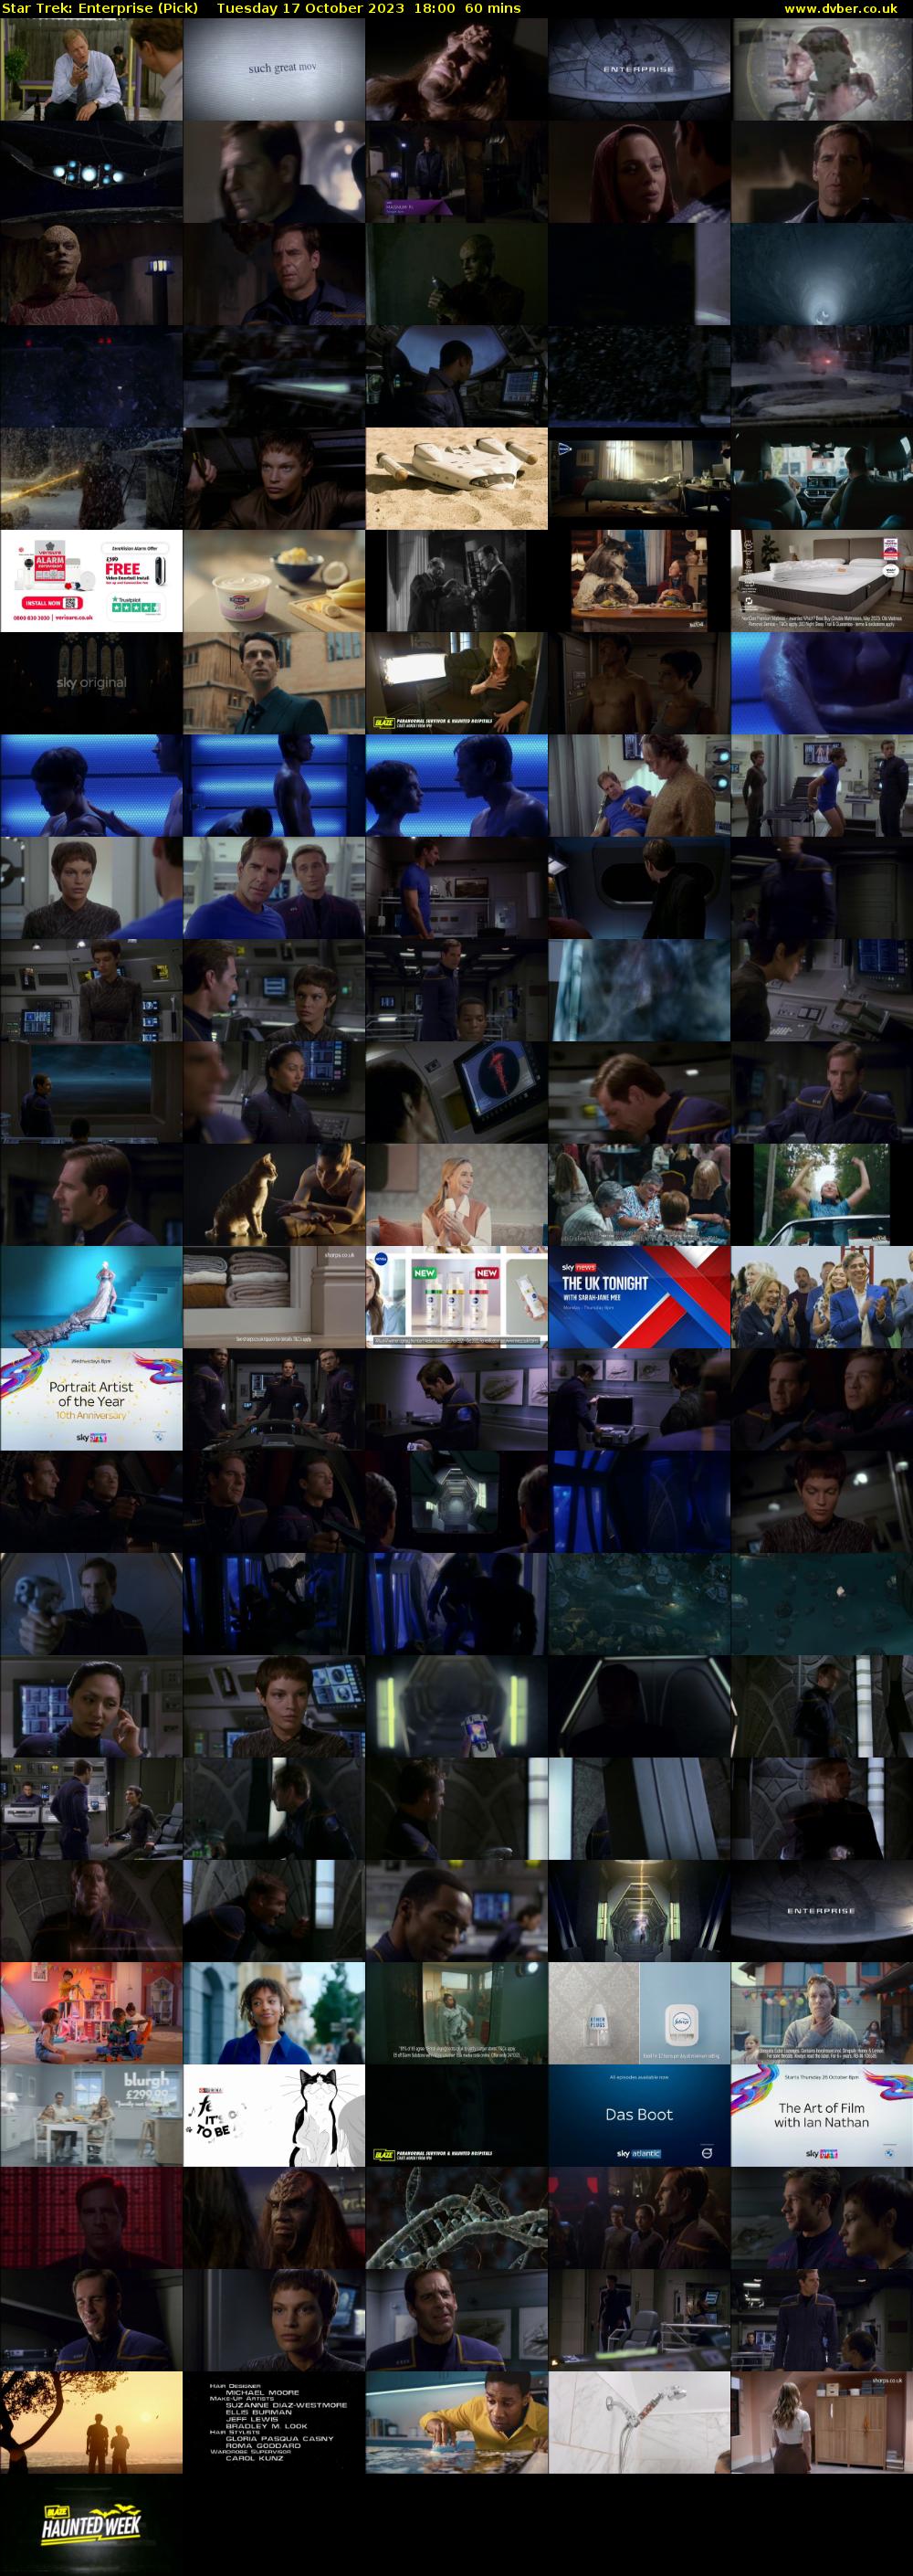 Star Trek: Enterprise (Pick) Tuesday 17 October 2023 18:00 - 19:00